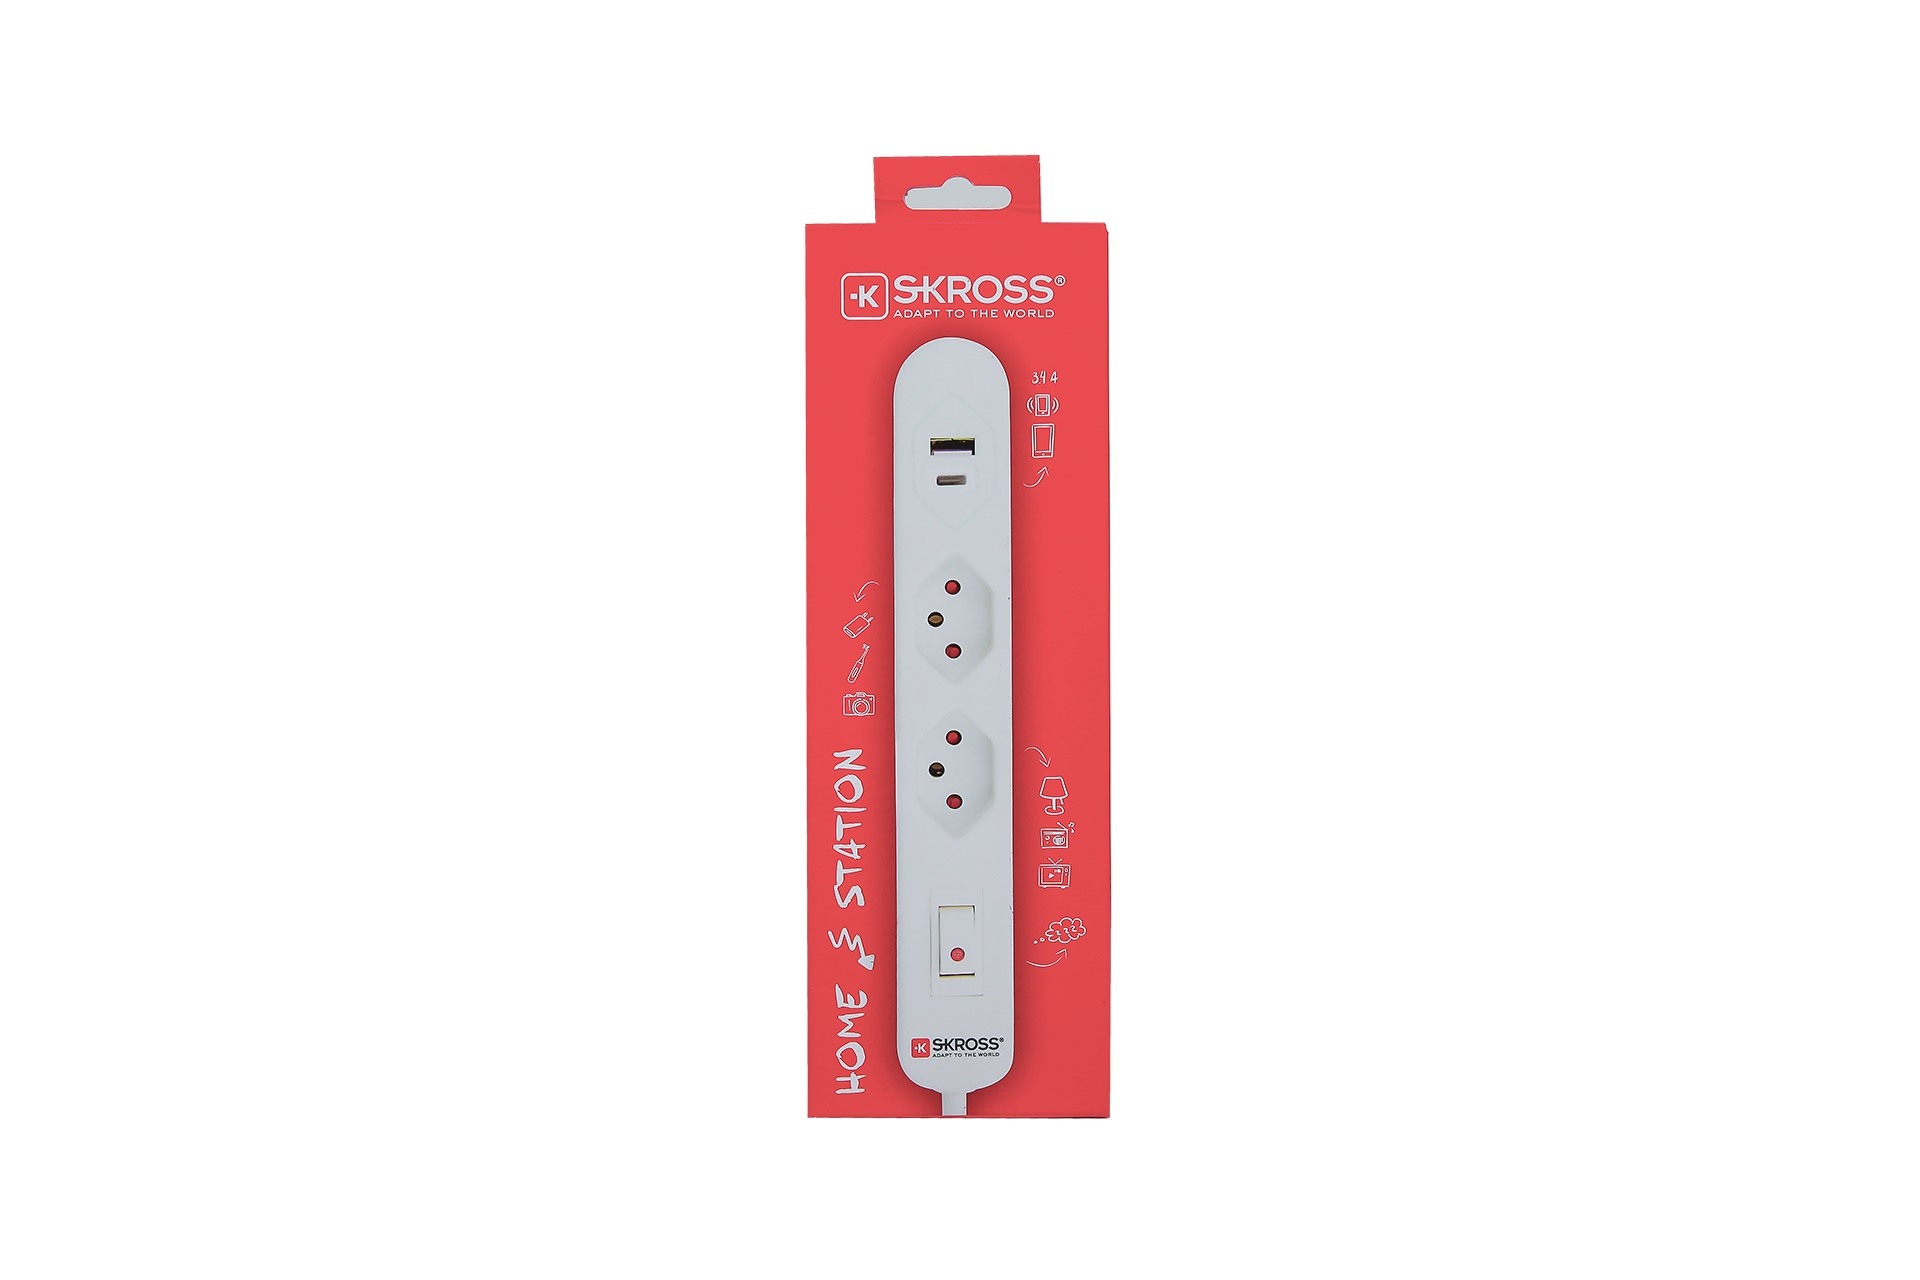 SKROSS Home Station USB-C Retail wht 69.21350 2x T13,1x USB-C + 1x USB-A